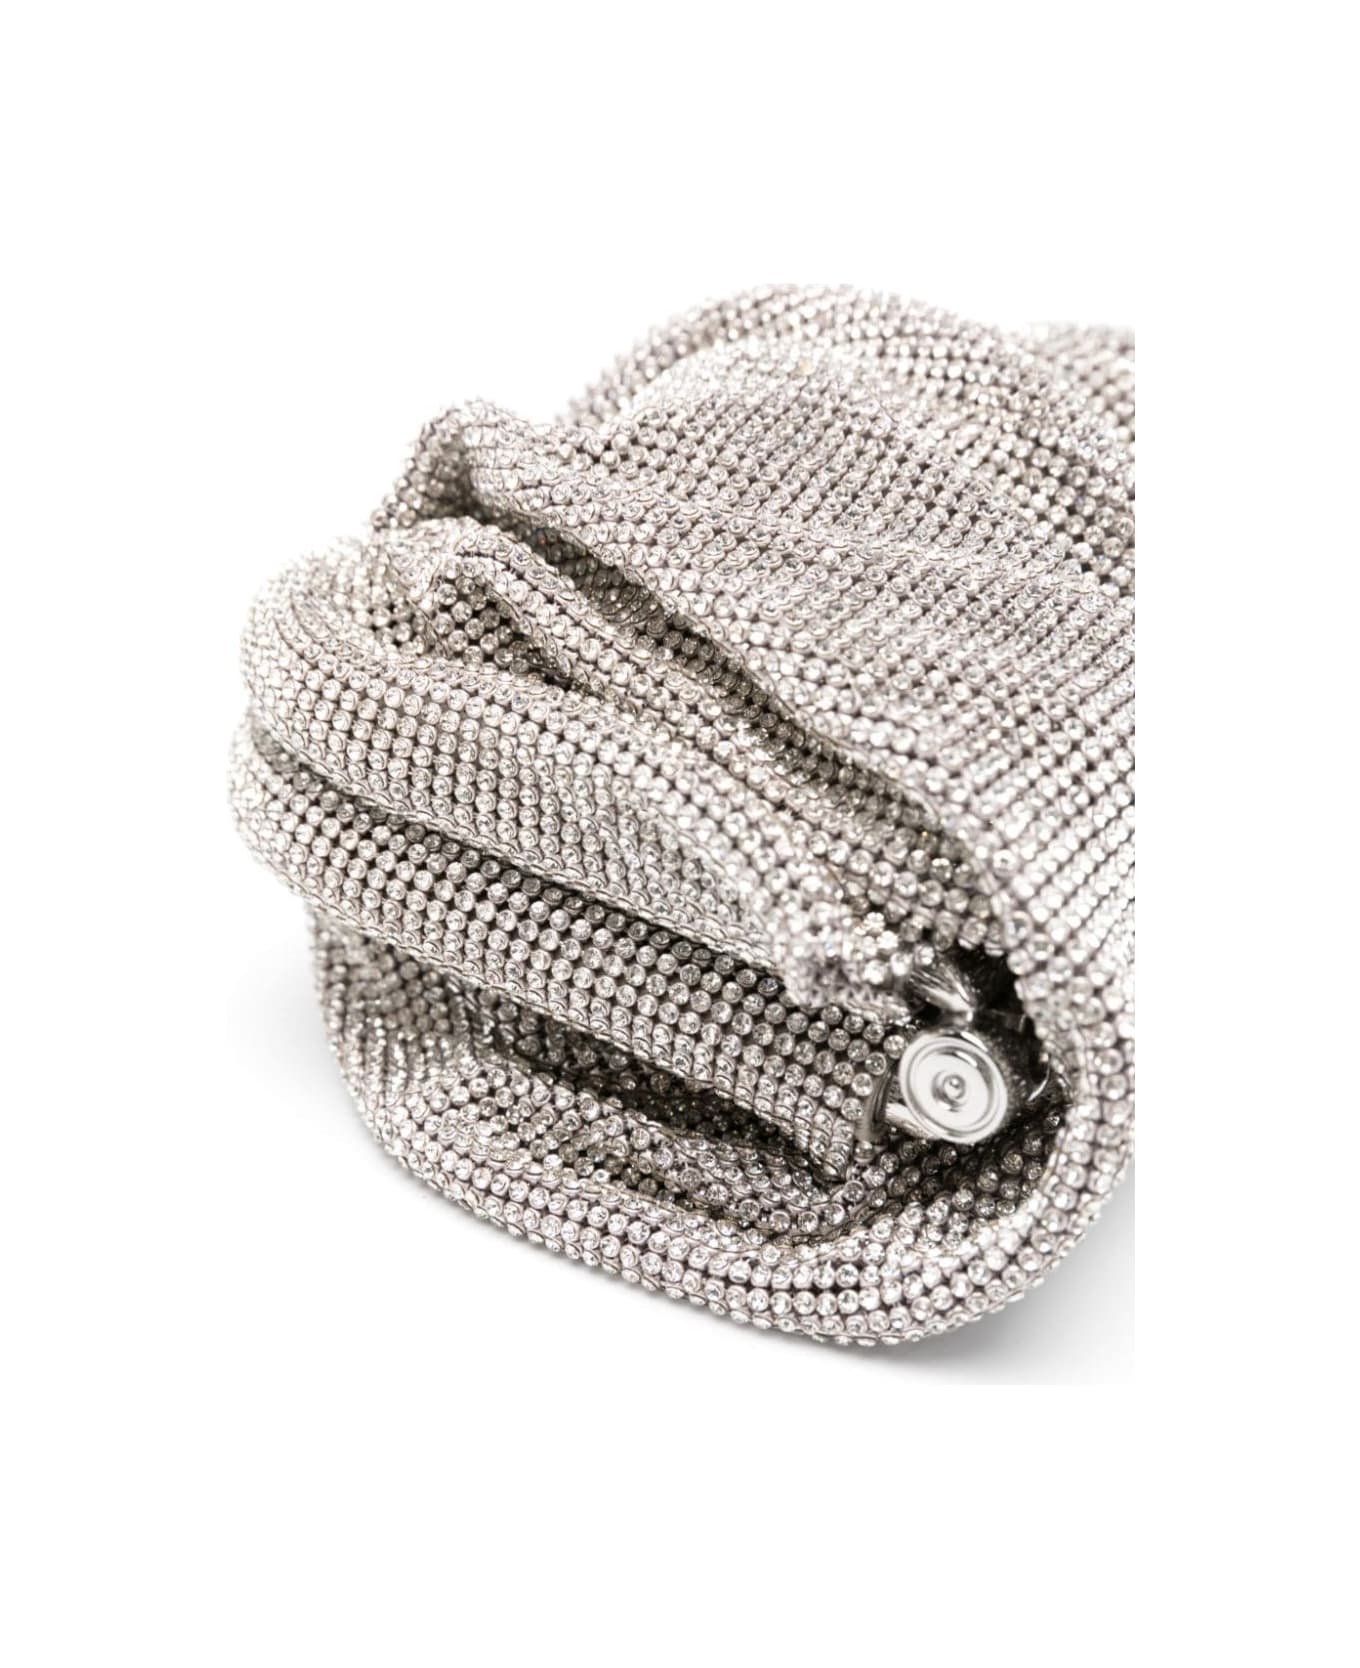 Benedetta Bruzziches 'venus La Petite' Silver Clutch Bag In Fabric With Allover Crystals Woman - Metallic クラッチバッグ